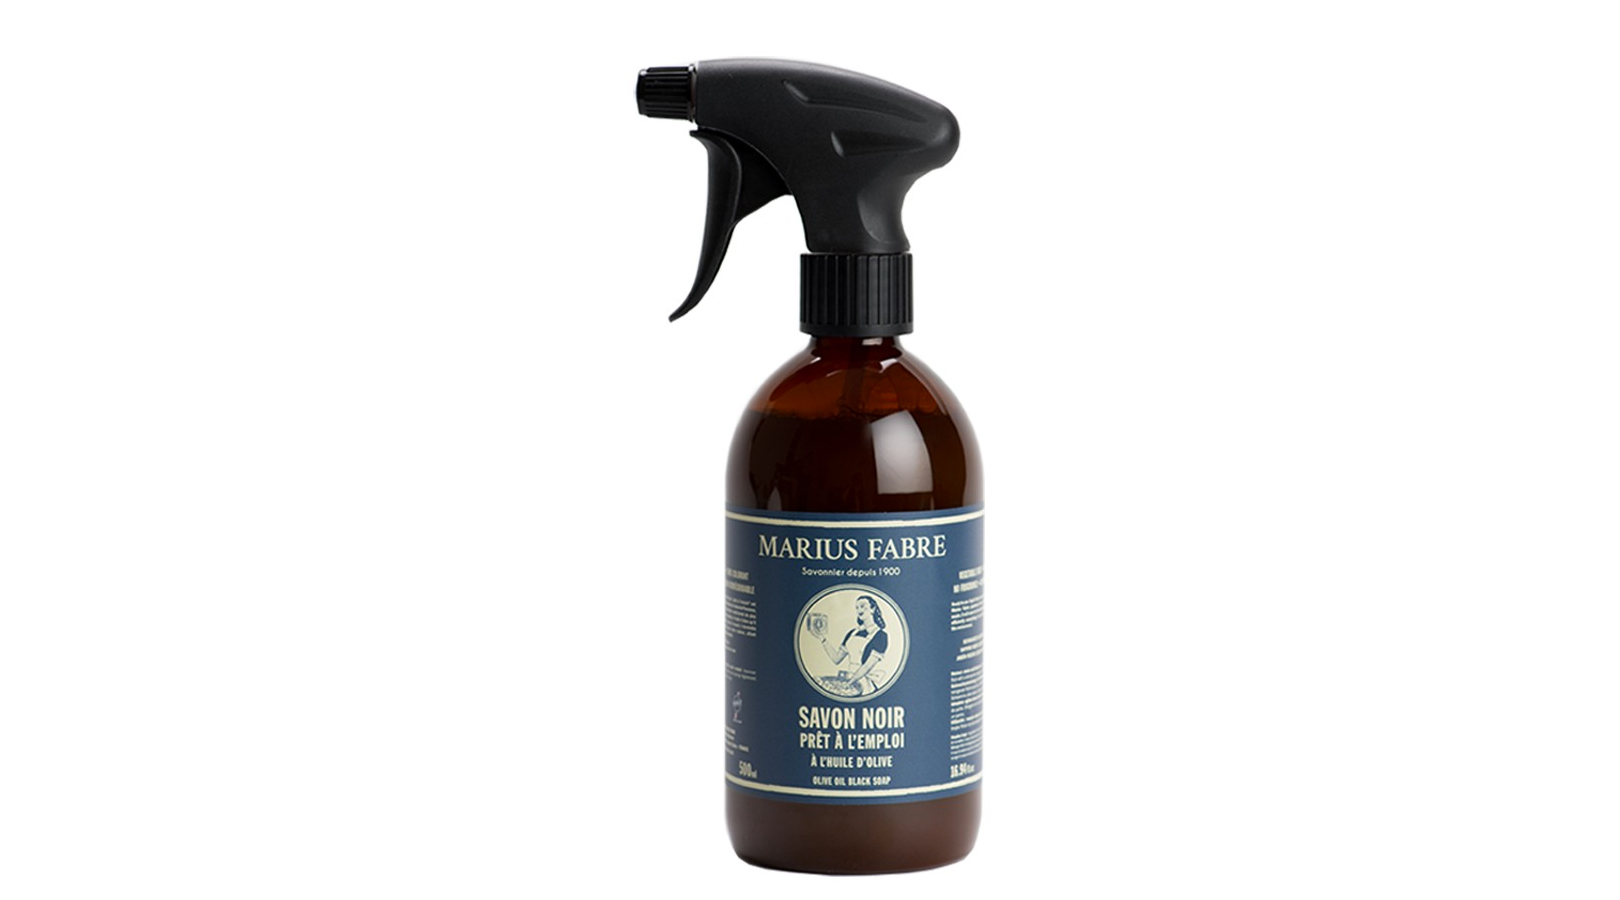 Black soap household spray NATURE 500 mlSavon noir NATURE vaporisateur 500 ml